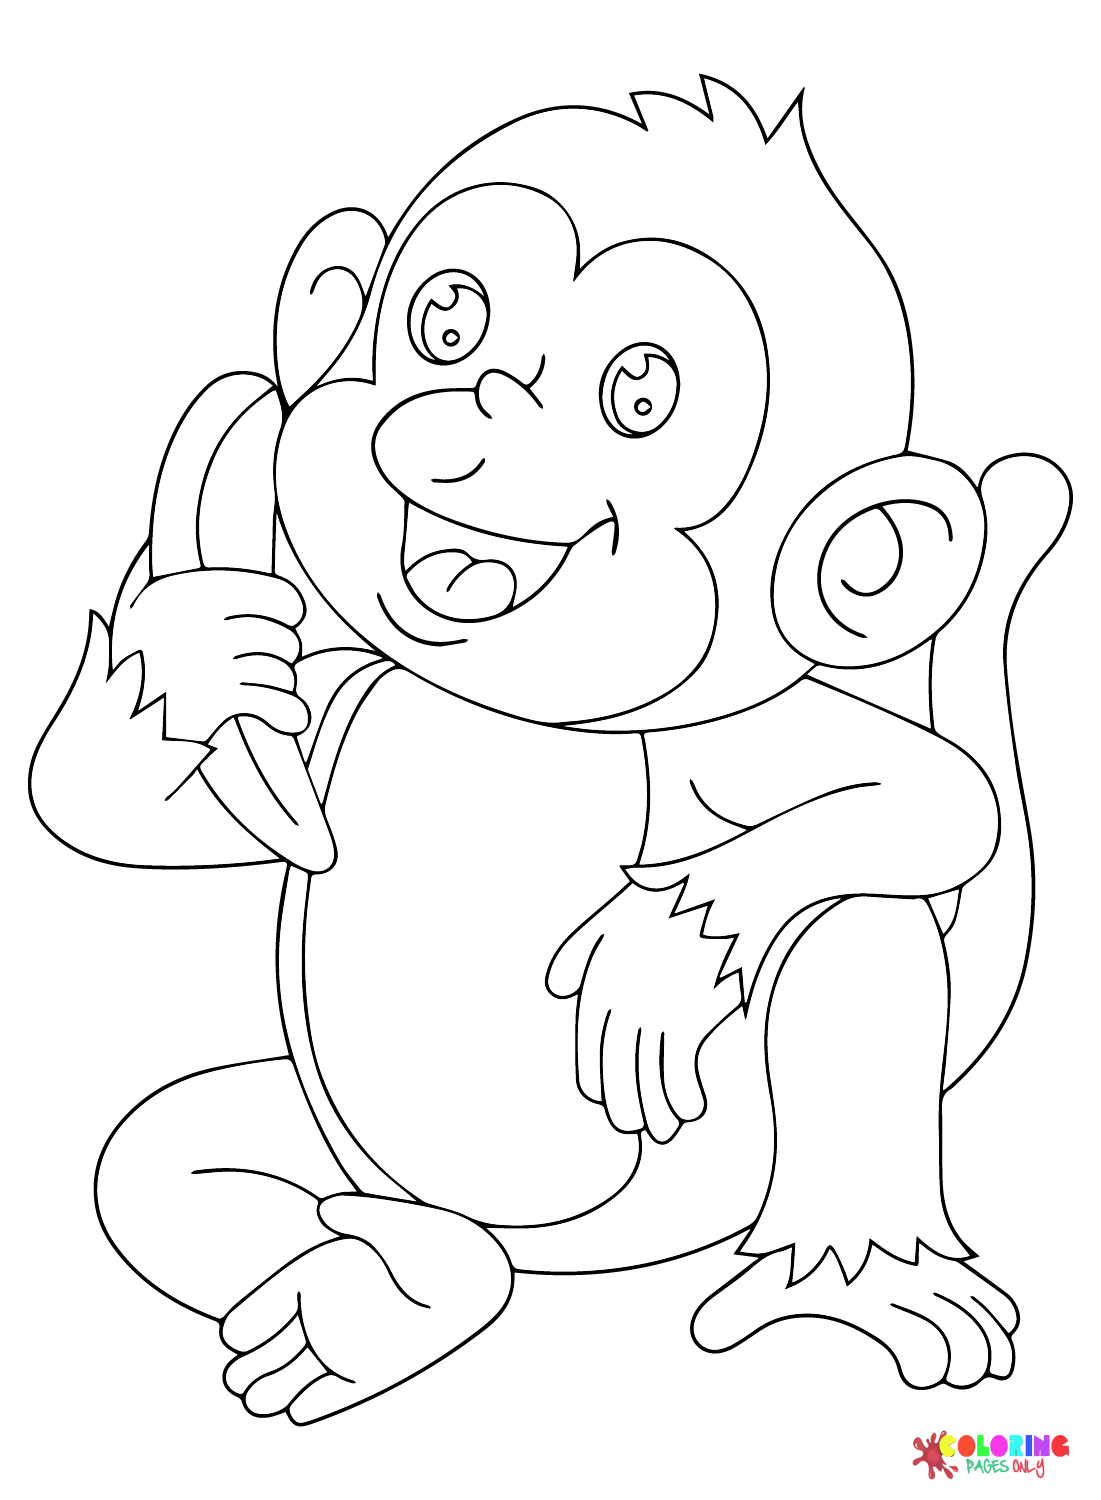 الموز والقرد السعيد من الموز